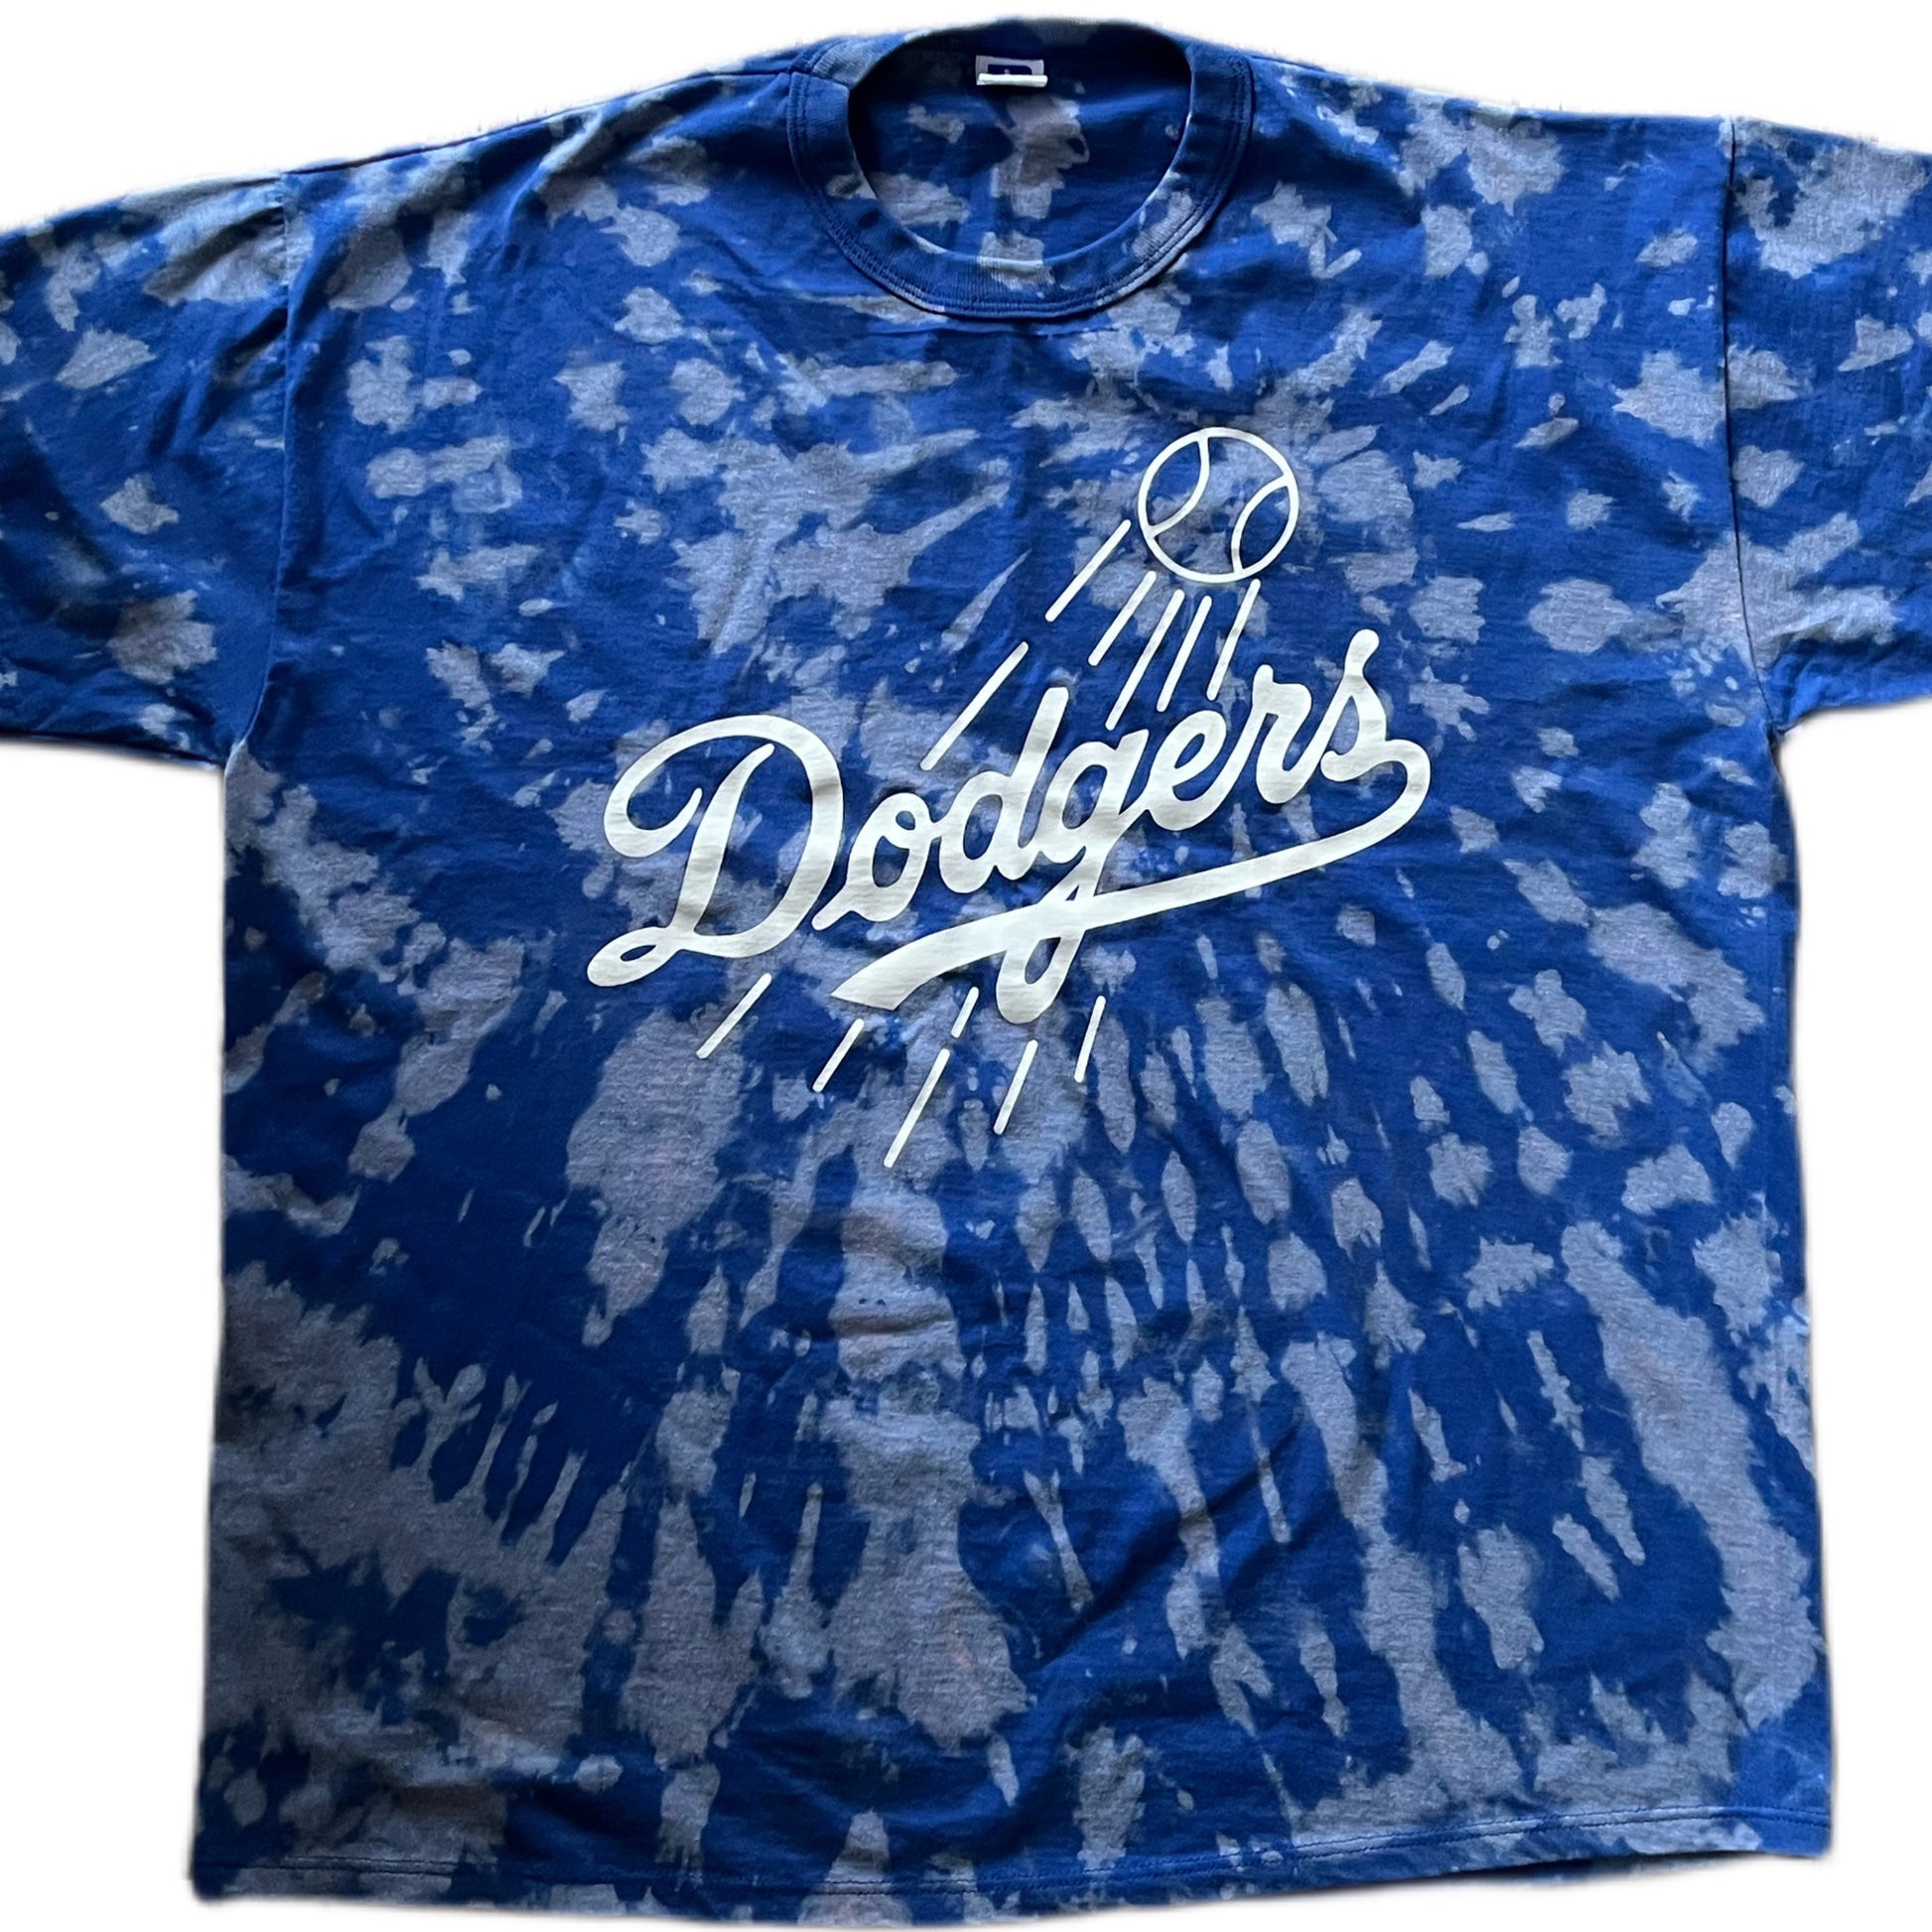 Vintage LA Dodgers T shirt